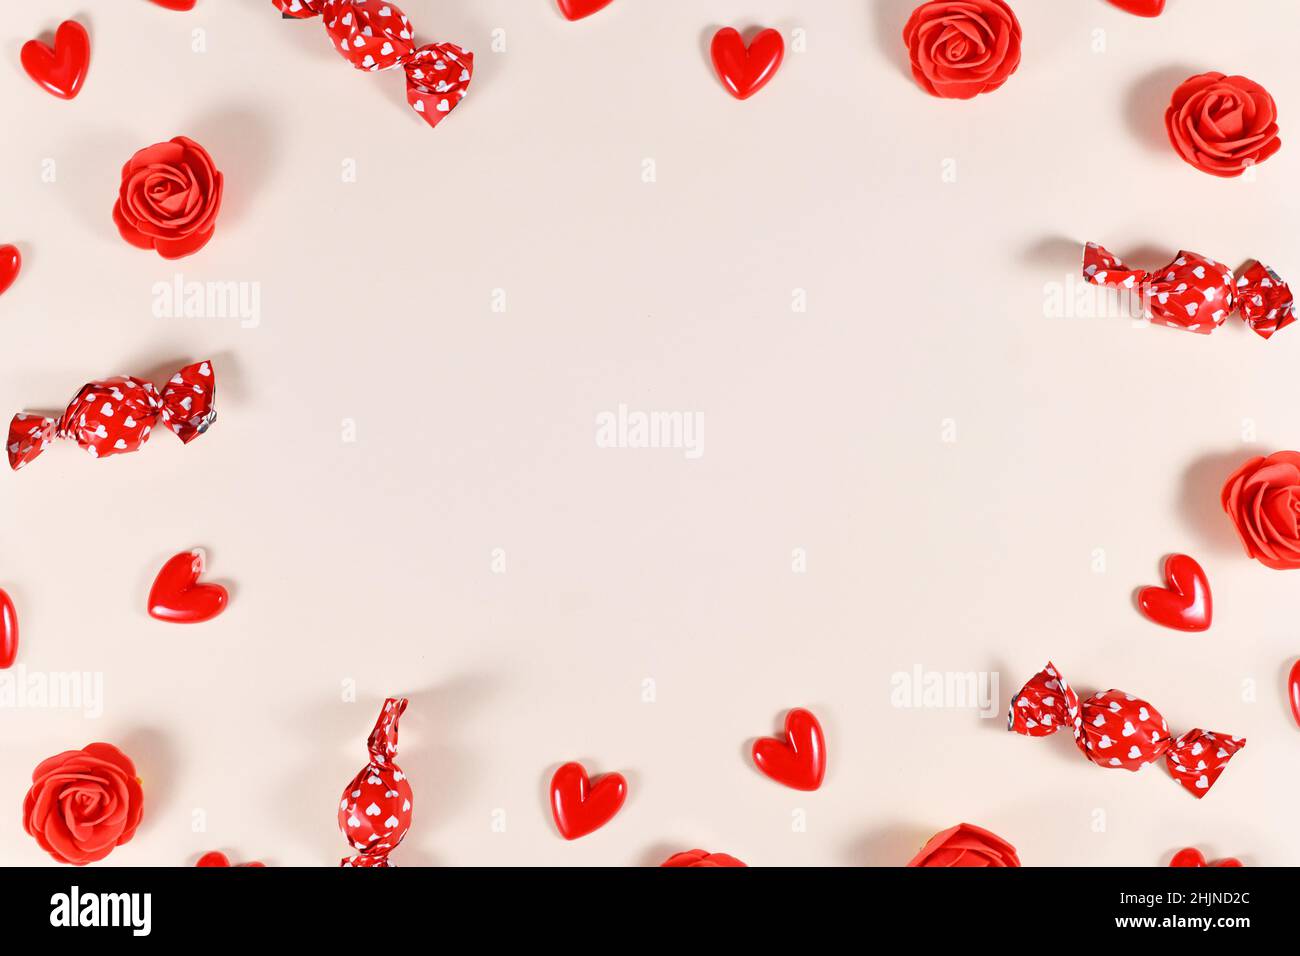 Saint-Valentin bonbon, confettis en forme de coeur et roses rouges formant un cadre autour de beige avec l'espace de copie Banque D'Images